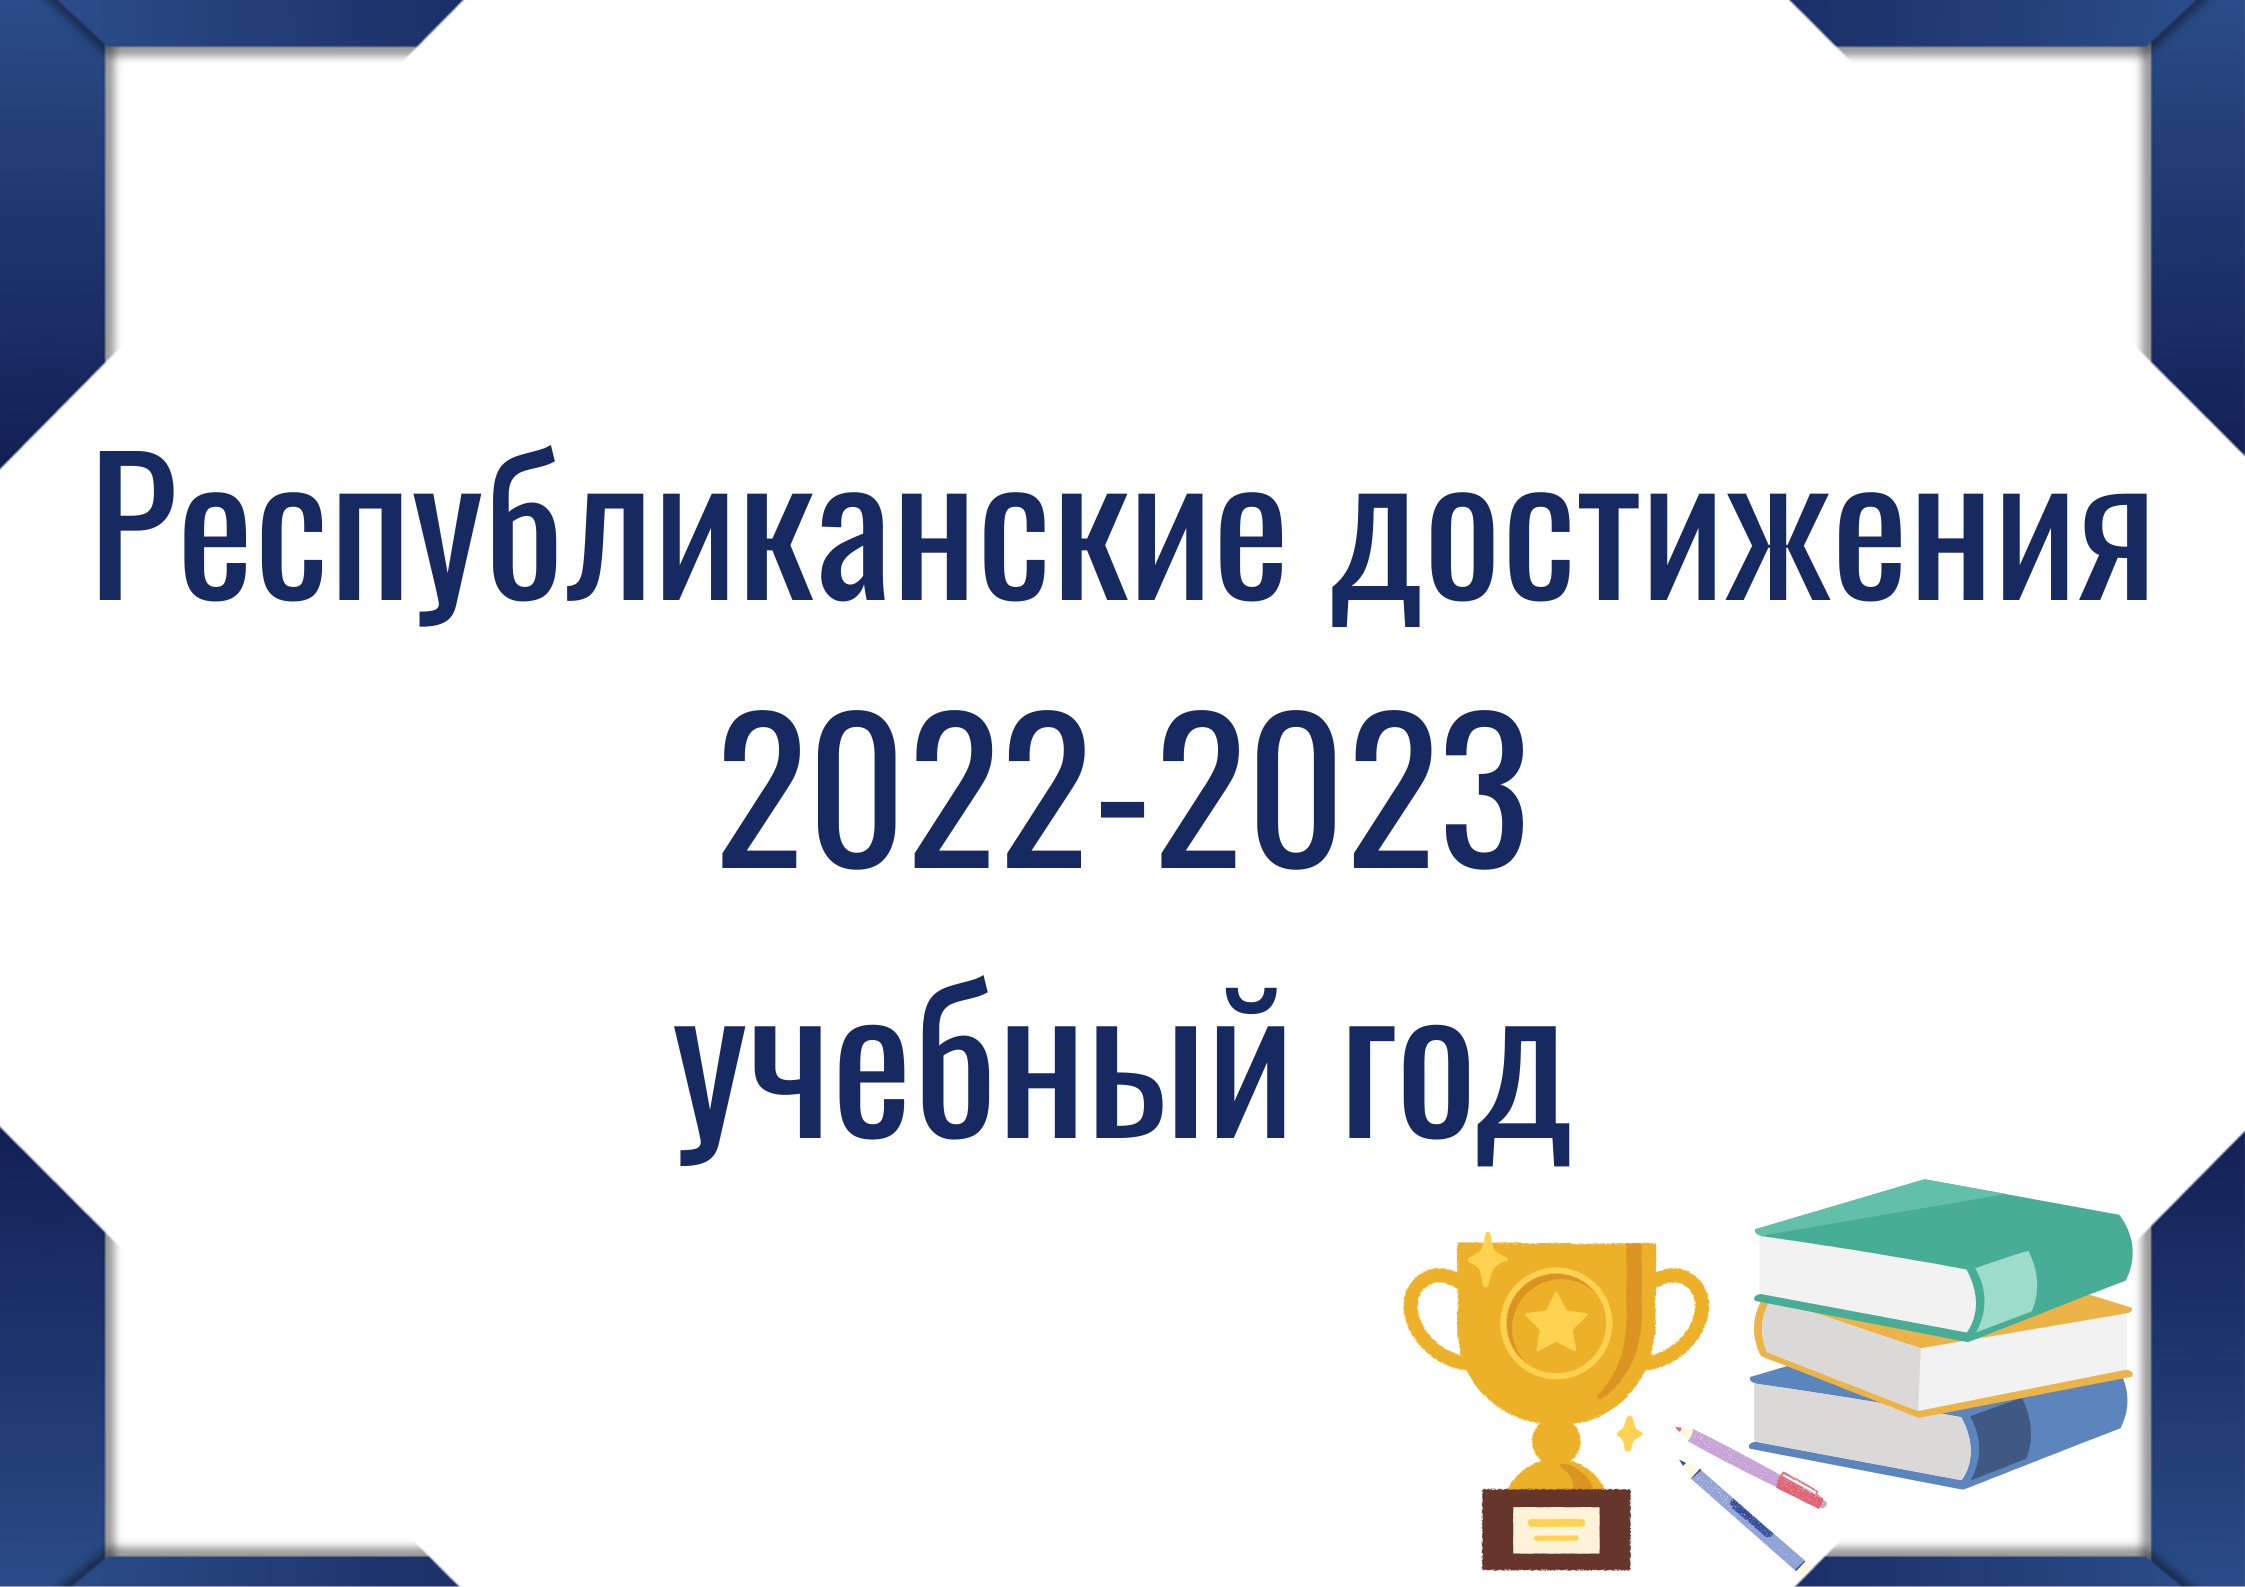 Кнопка "Республиканские достижения 2022-2023"